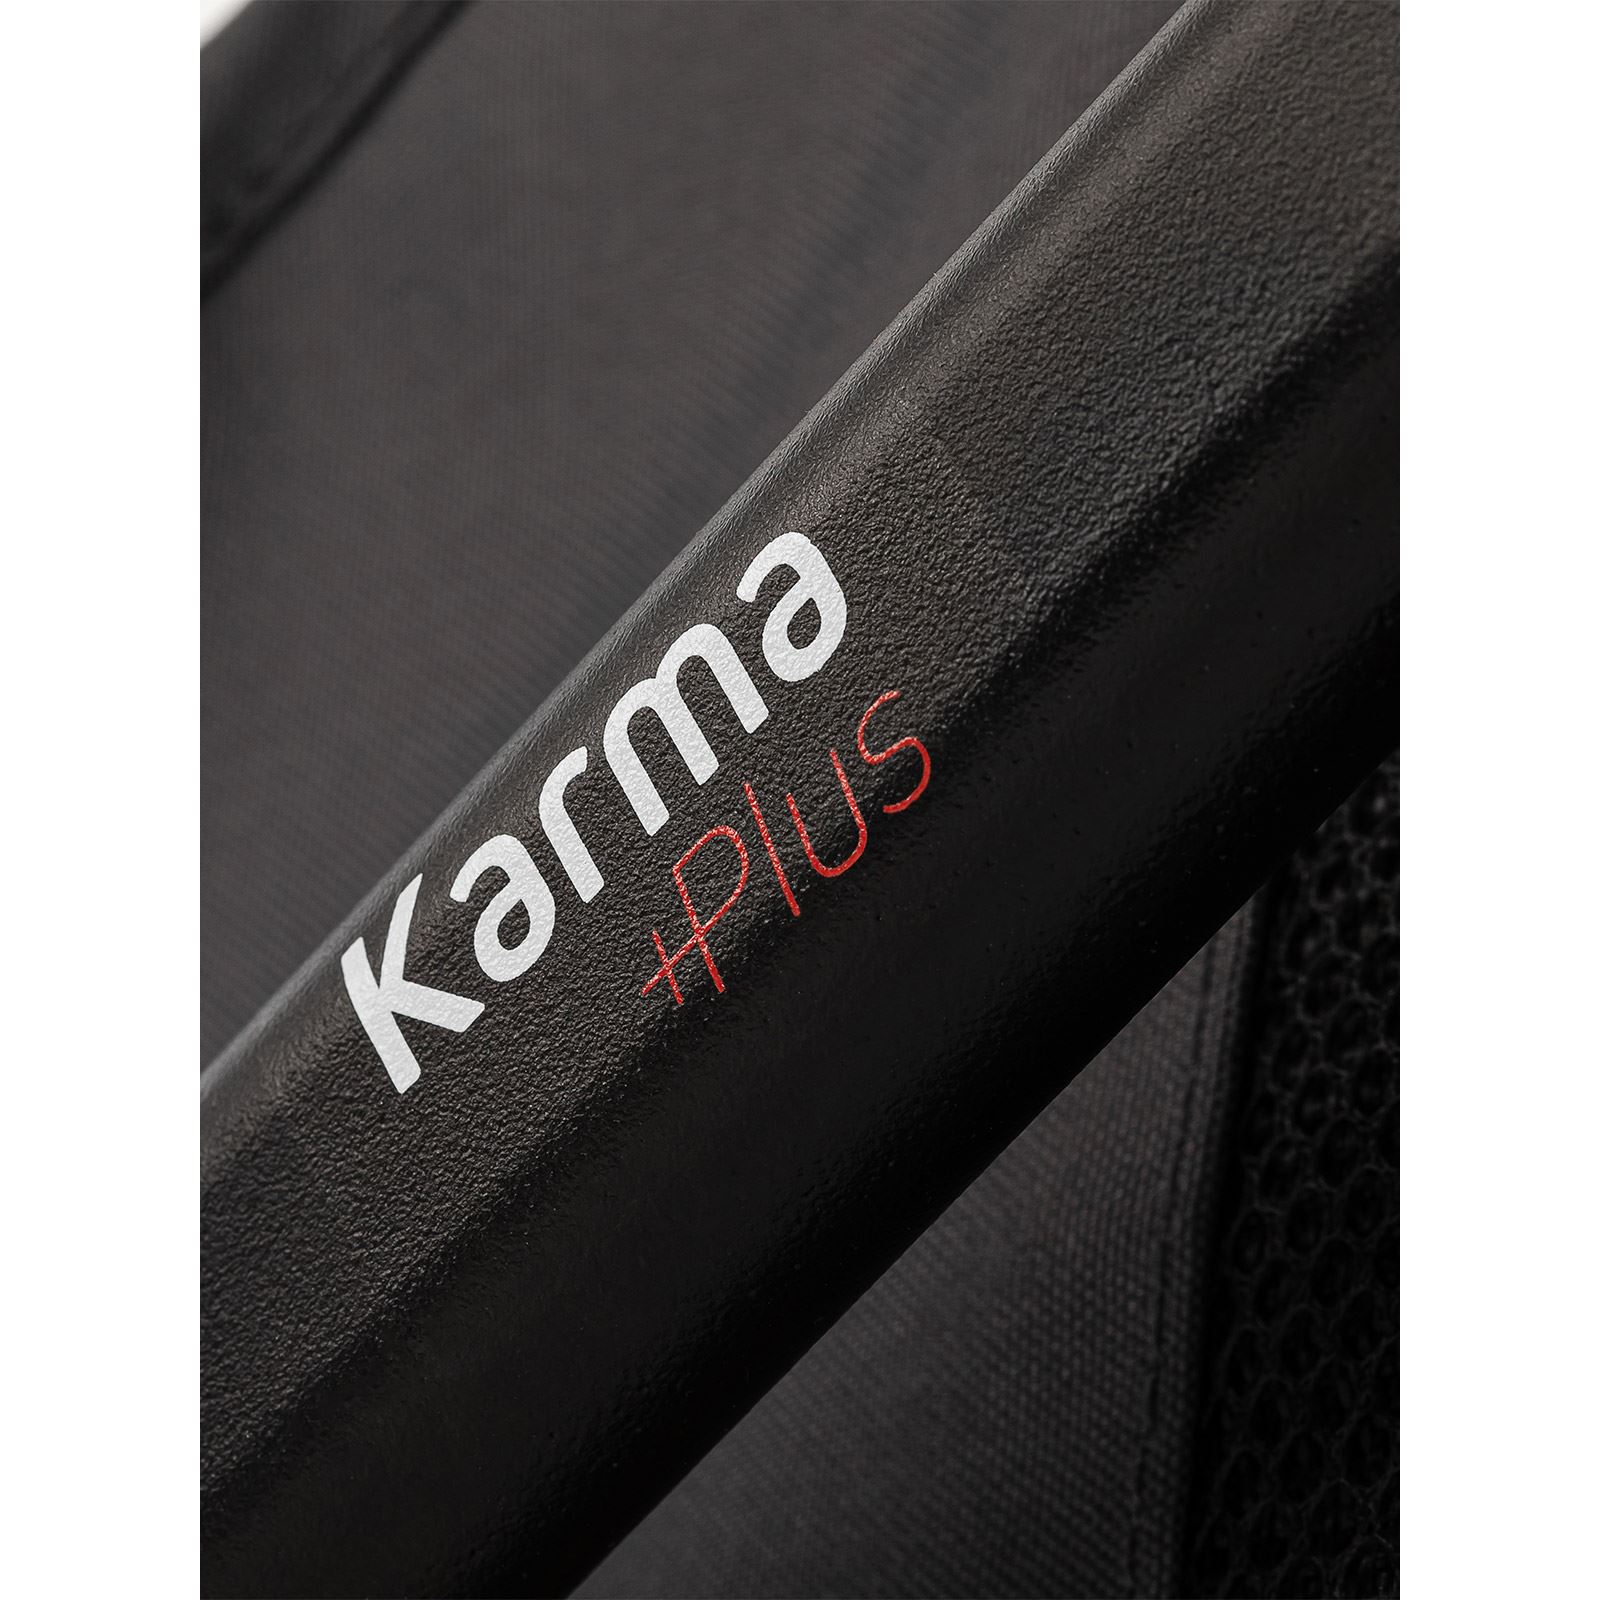 Pierre Cardin Karma Plus Travel Sistem Bebek Arabası Gri